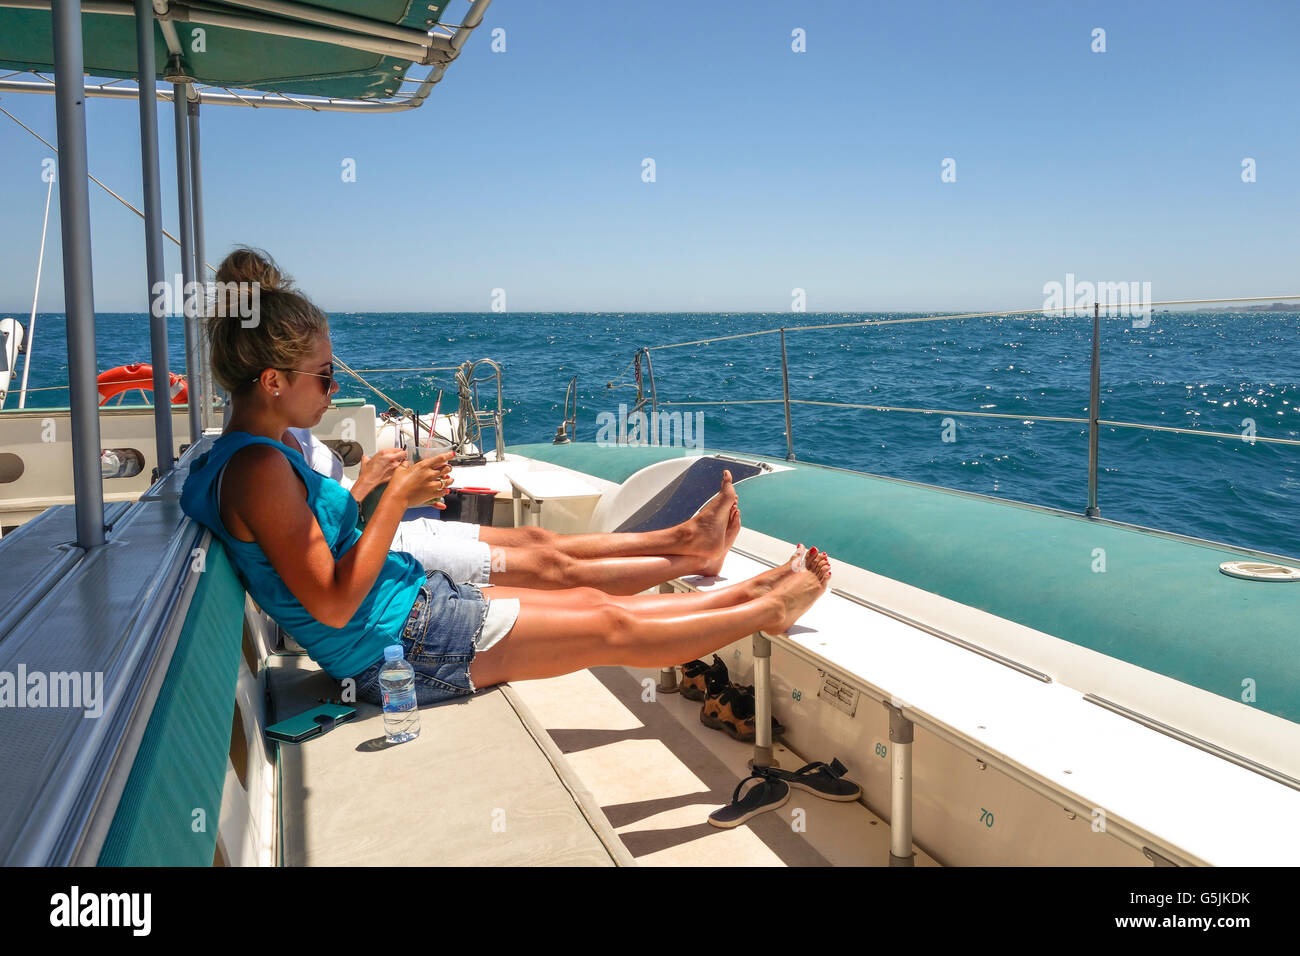 Coppia giovane sul catamarano, avente un drink sulla barca a vela tour, rilassarsi e godersi il sole, Malaga, Andalusia, Spagna. Foto Stock